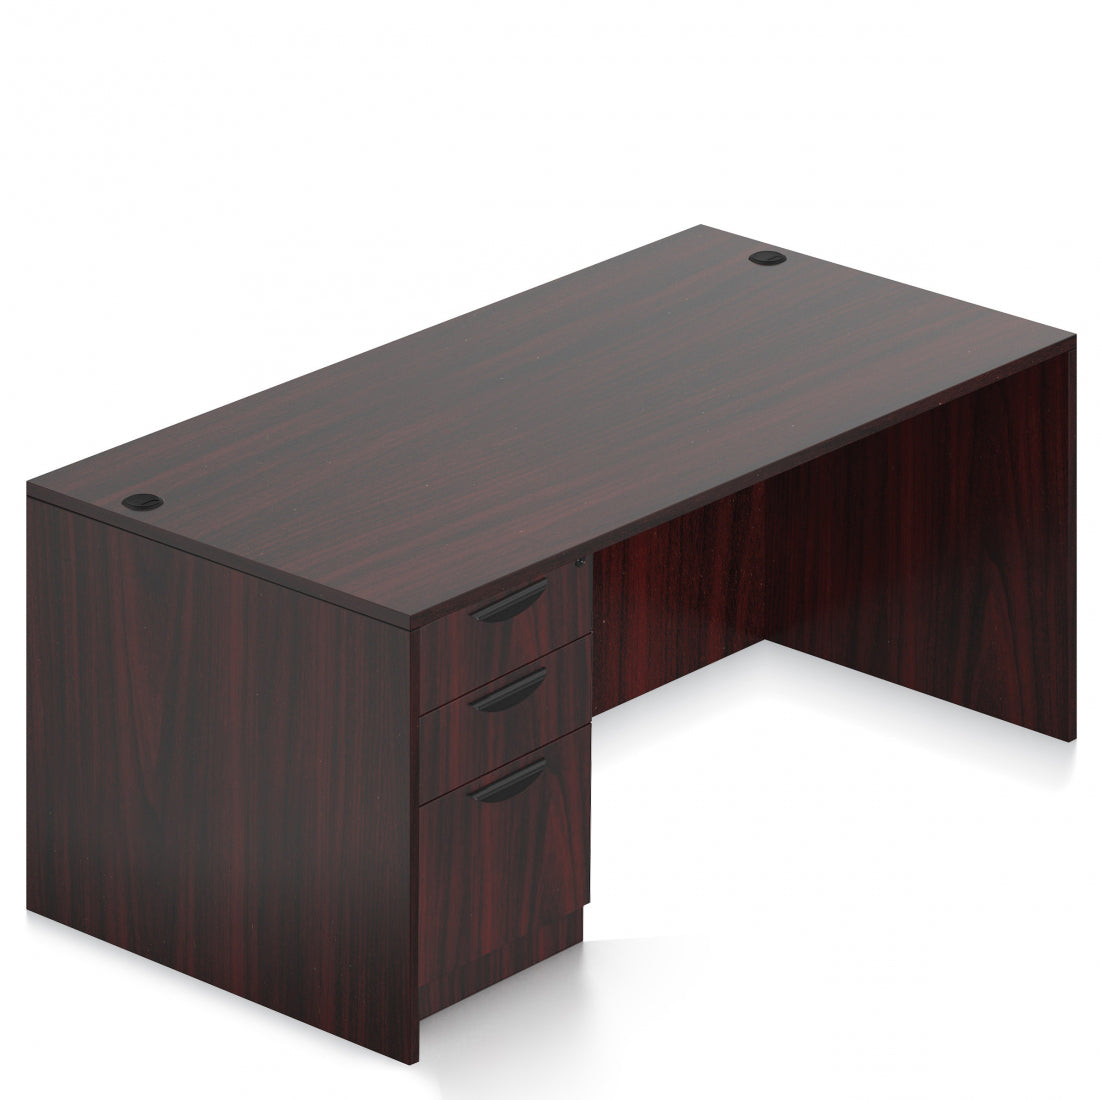 OTG 48"W x 24"D Rectangular Desk - Single Full Pedestal